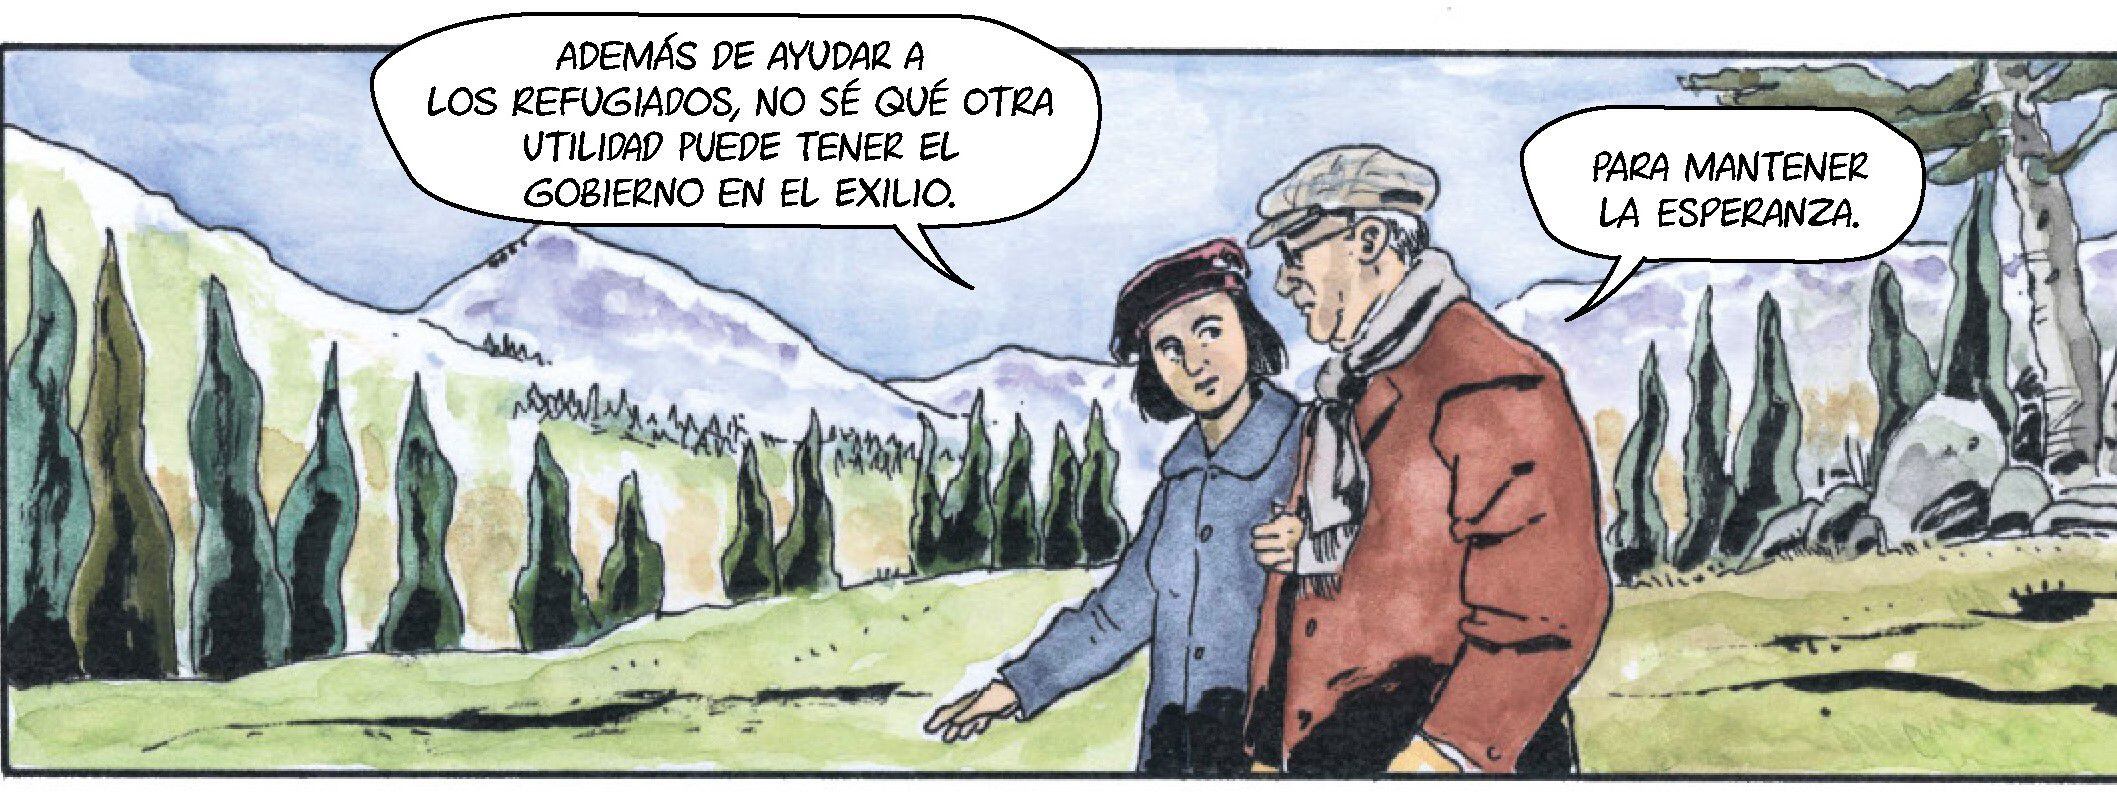 Una de las viñetas del cómic sobre el exilio de Manuel Azaña a Francia.